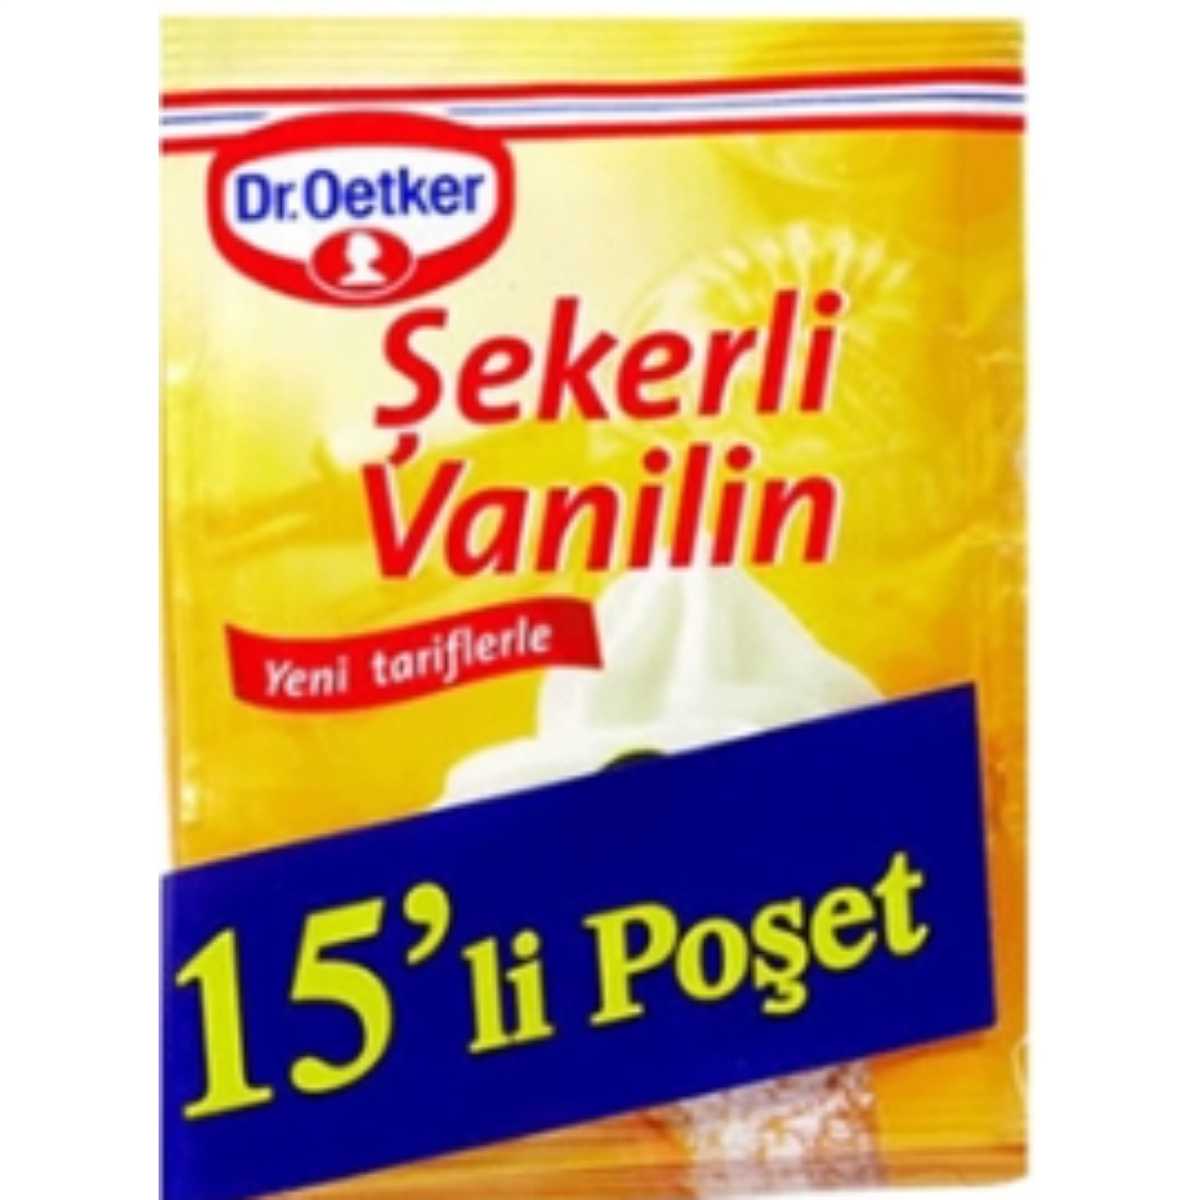 DR OETKER SEKERLI VANILIN 75 G 15 LI